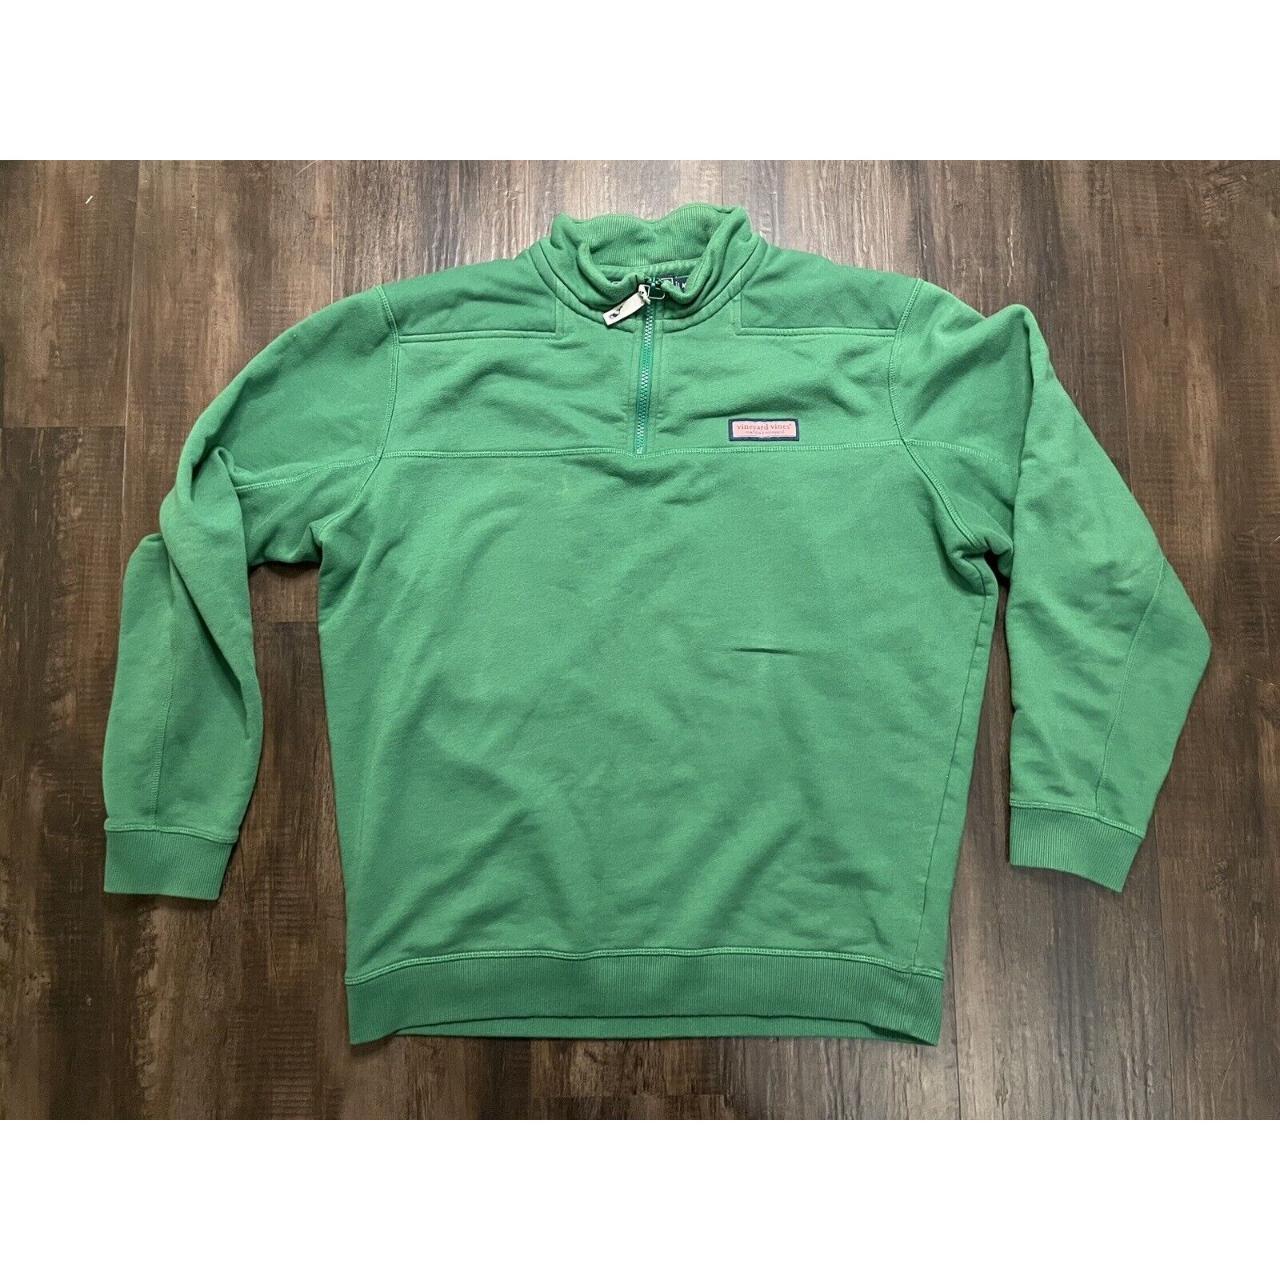 Vinyard Vines Shep Sweater Men’s 1/4 Zip Up Green... - Depop